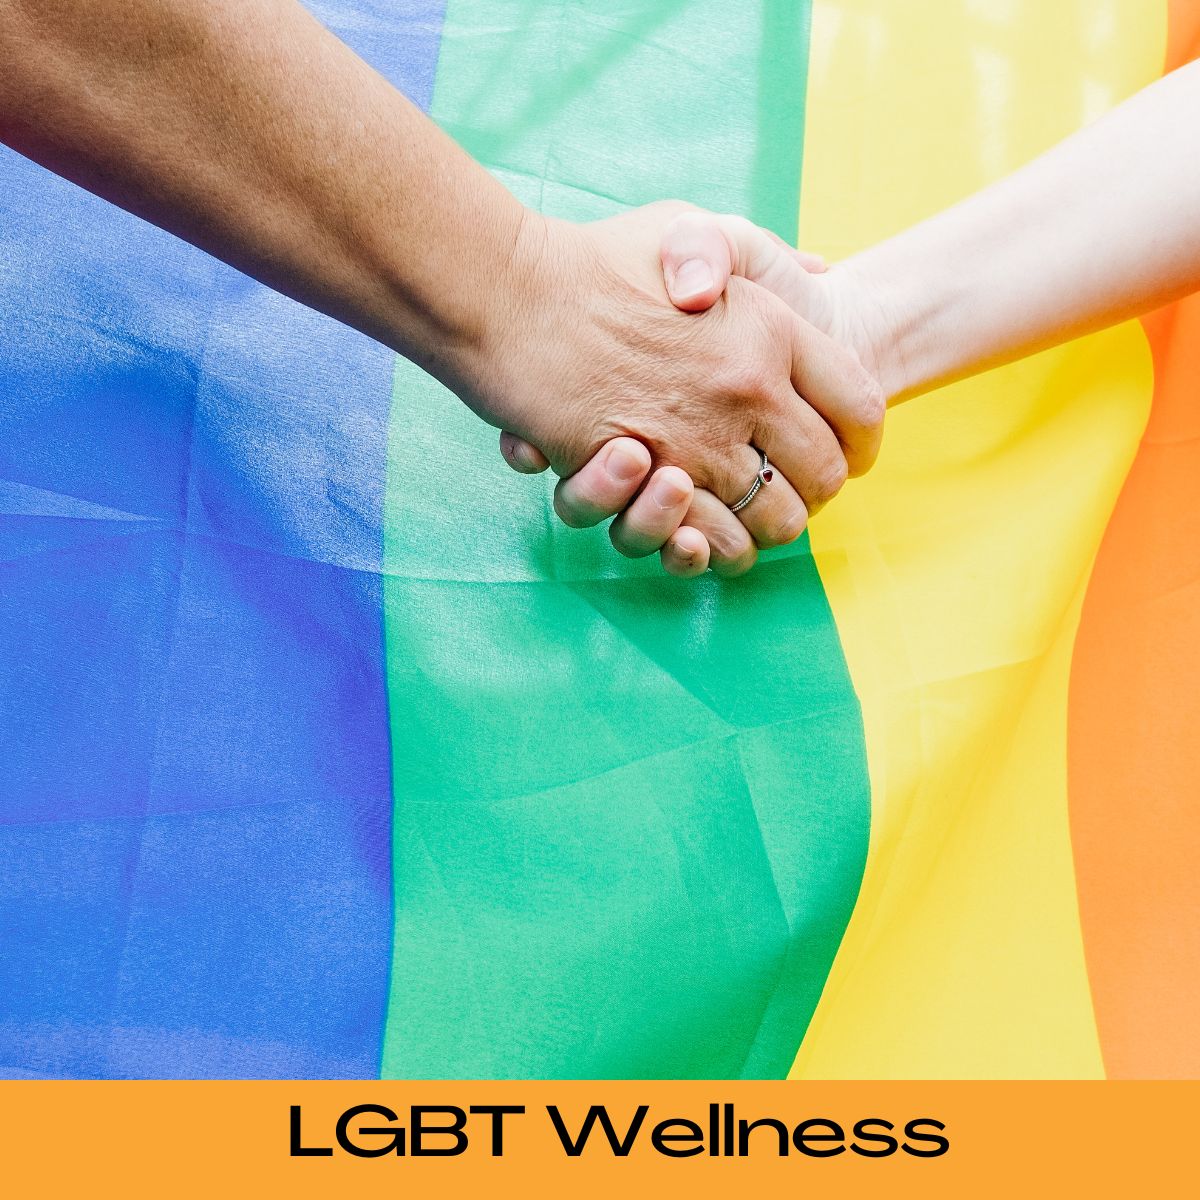 LGBT Wellness